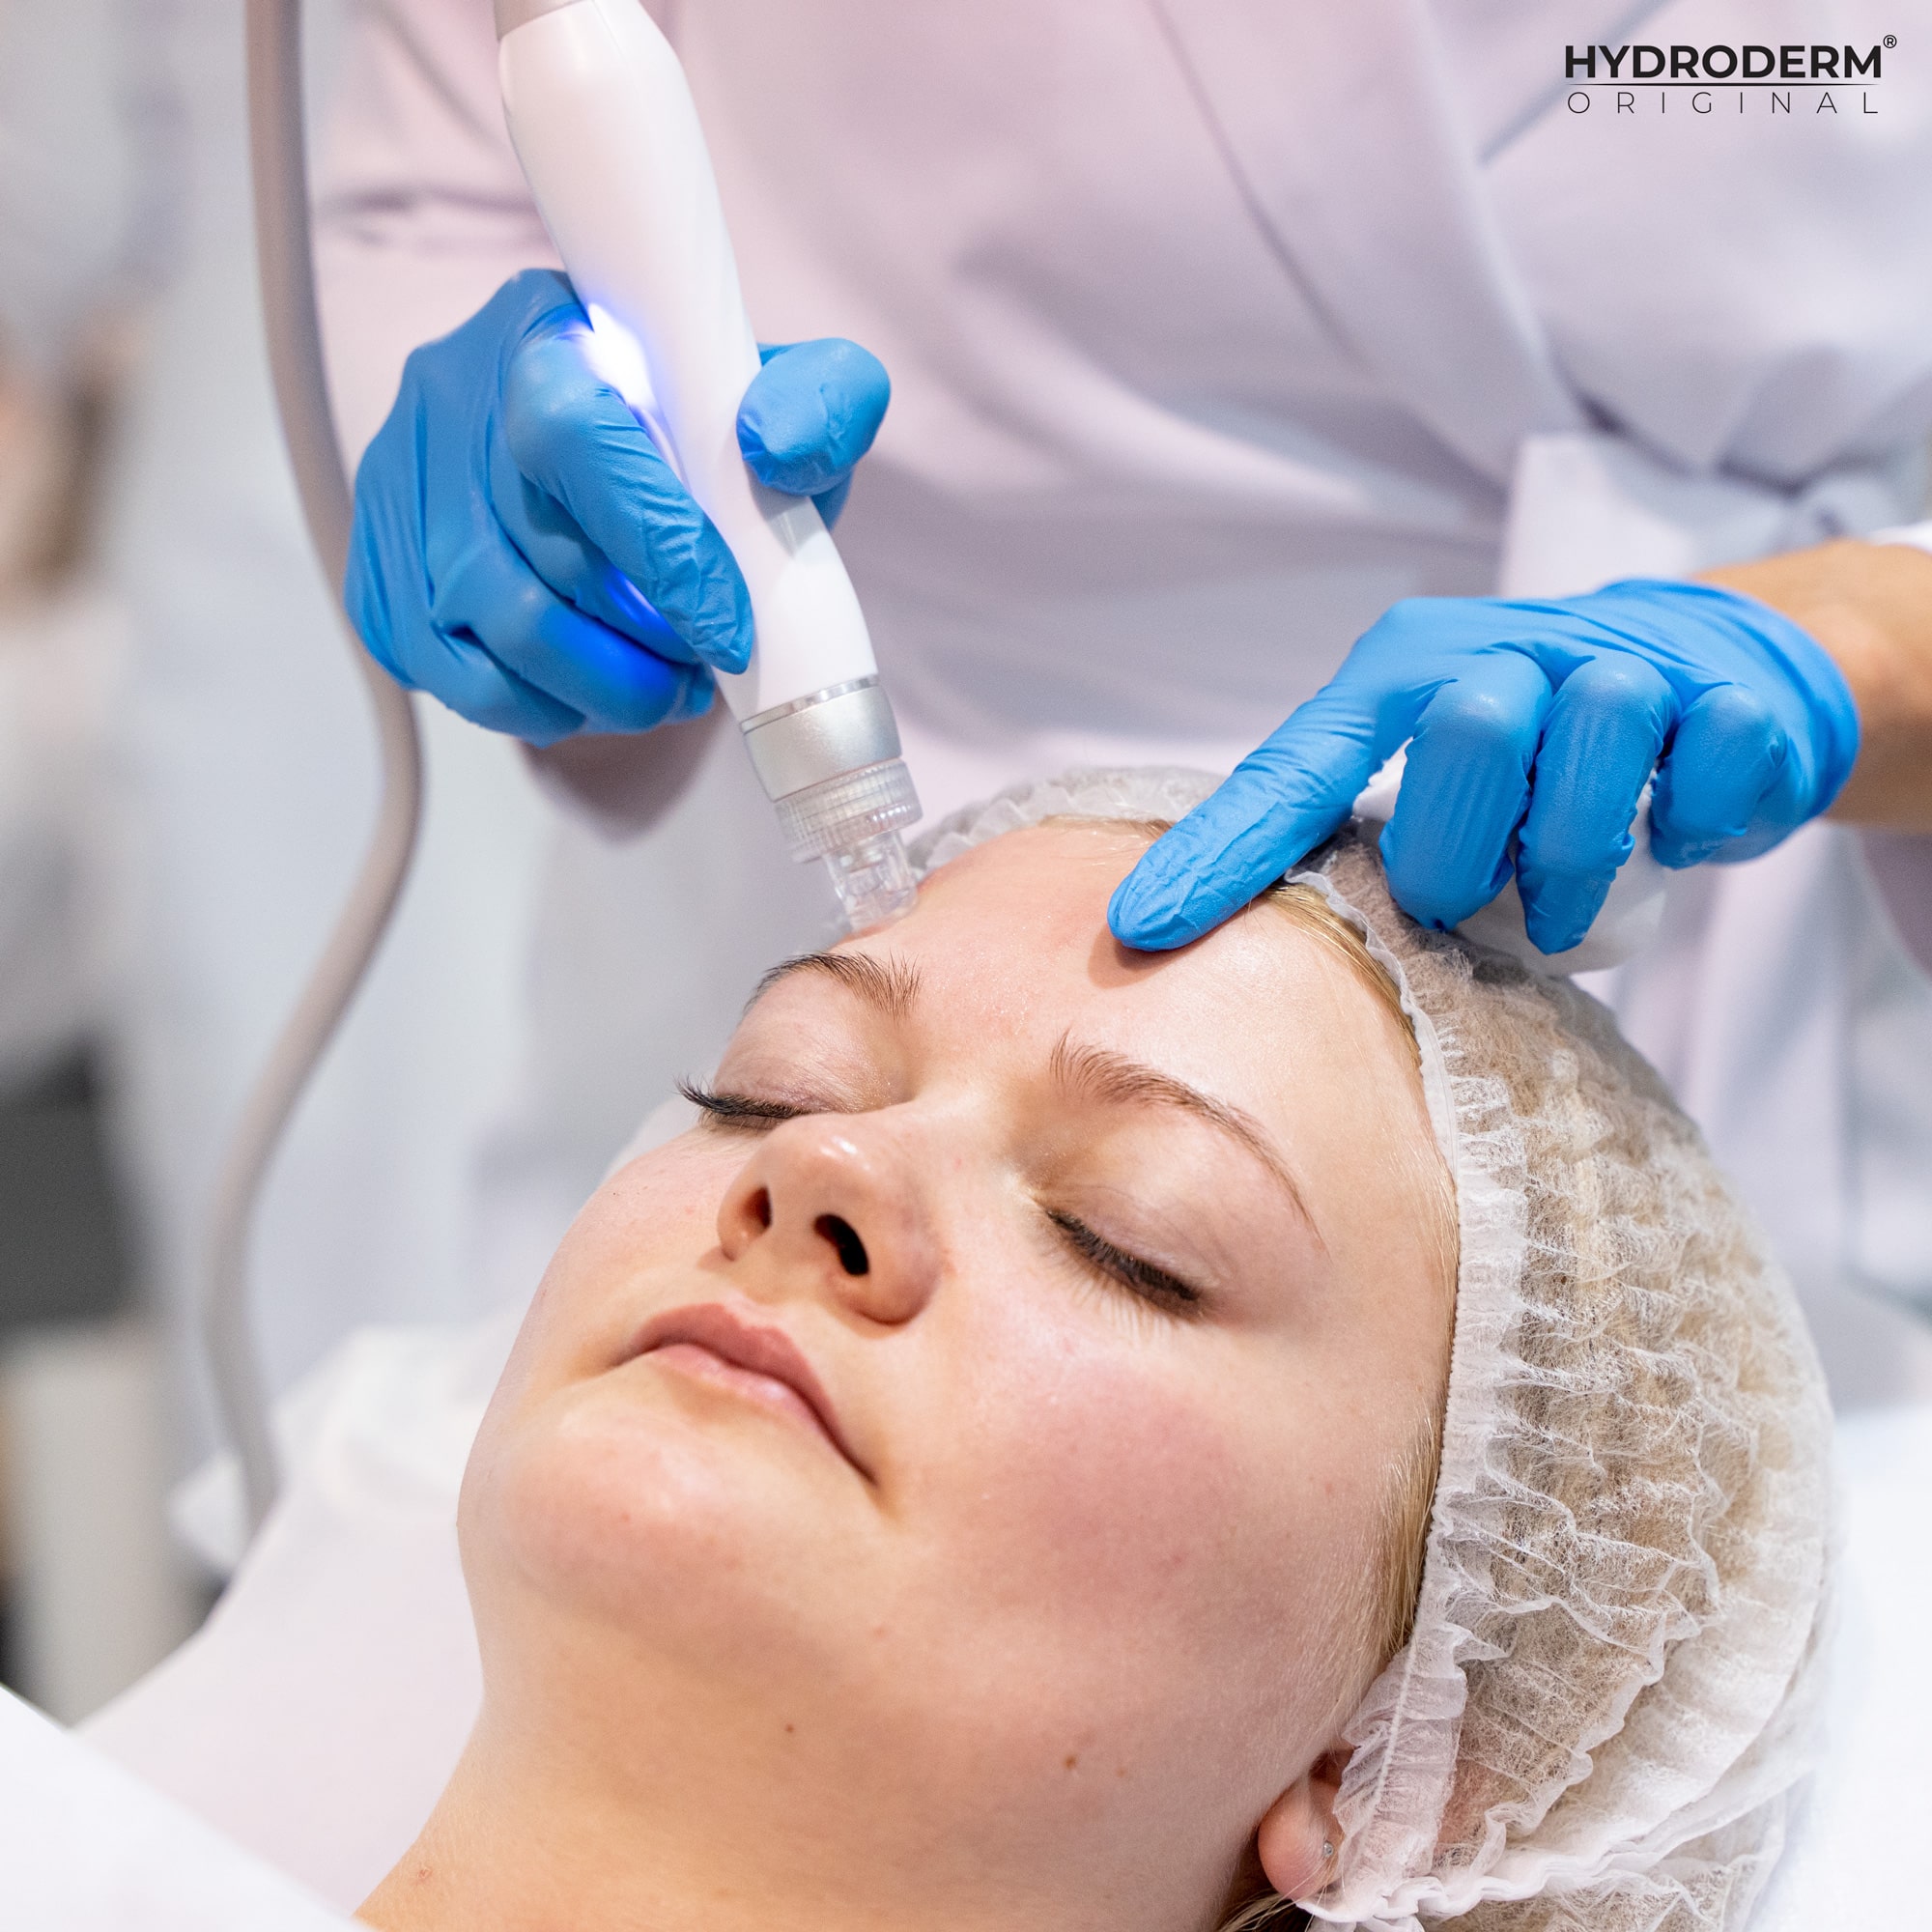 Kosmetolog podczas wykonywania procedury zatrzymuje się i pokazuje uczestniczce, na które miejsca powinna zwrócić szczególną uwagę